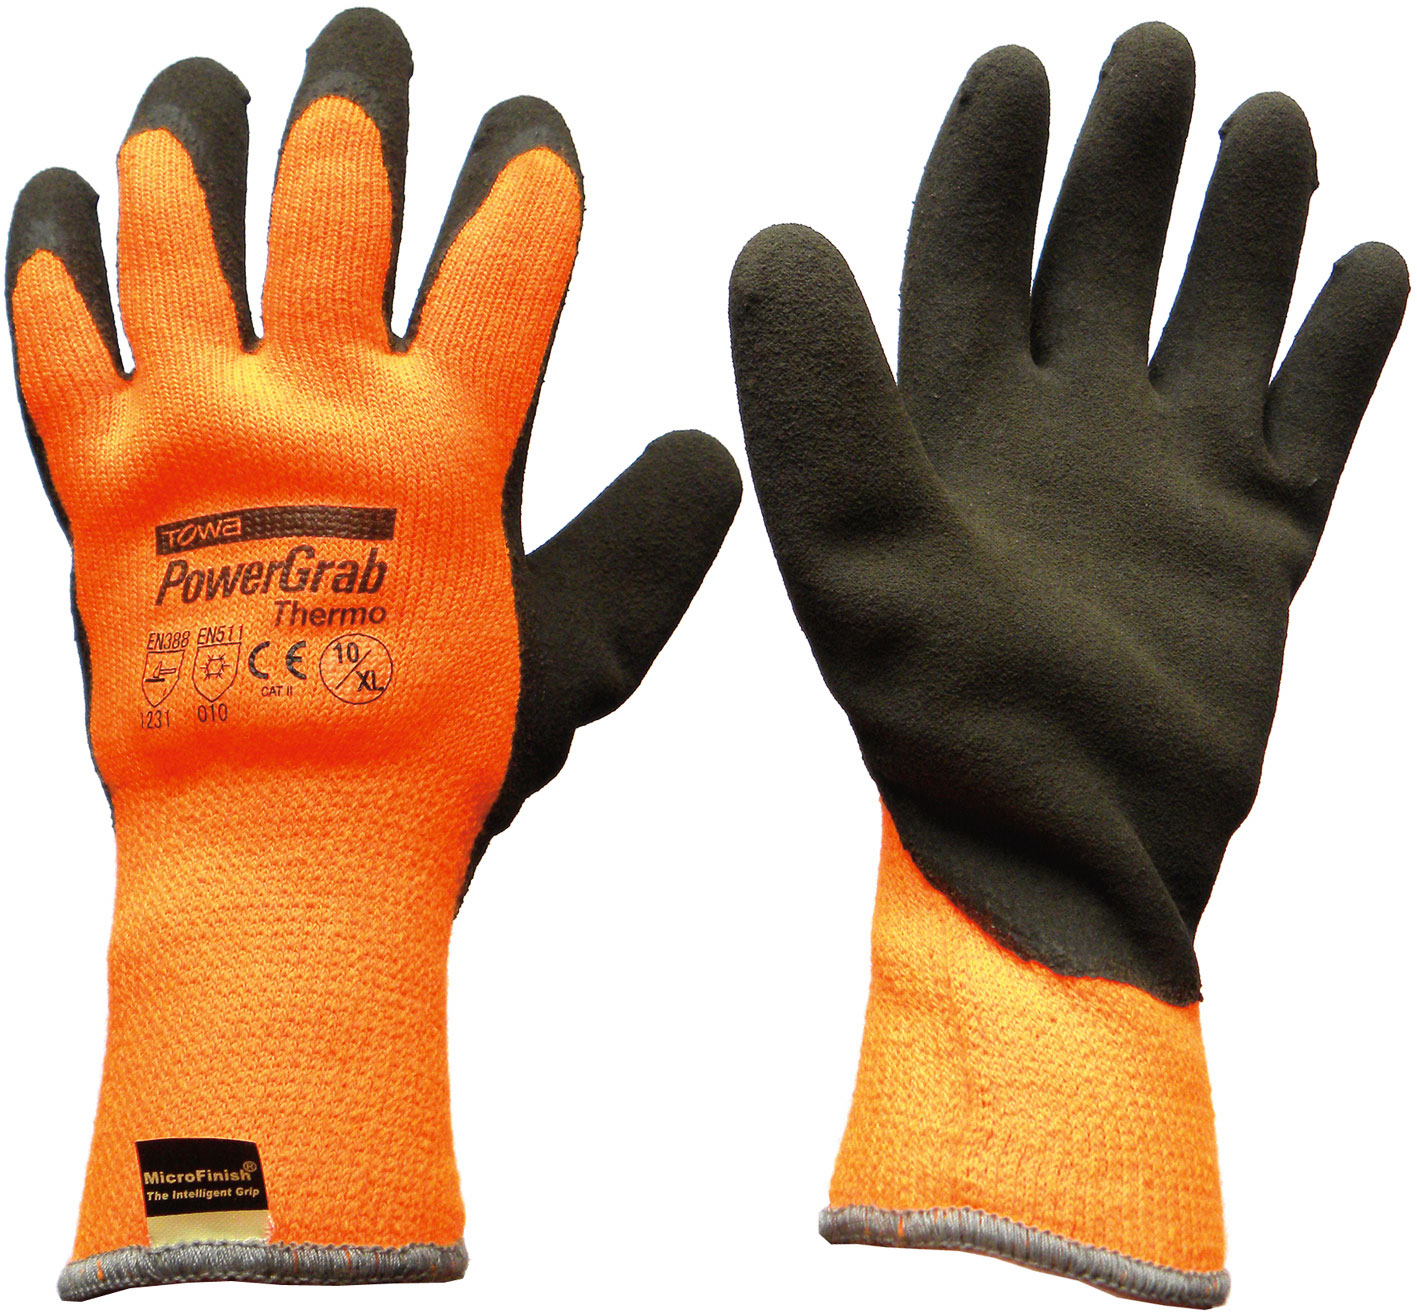 P/Grab Thermo Gloves LARGE ORANGE Towa